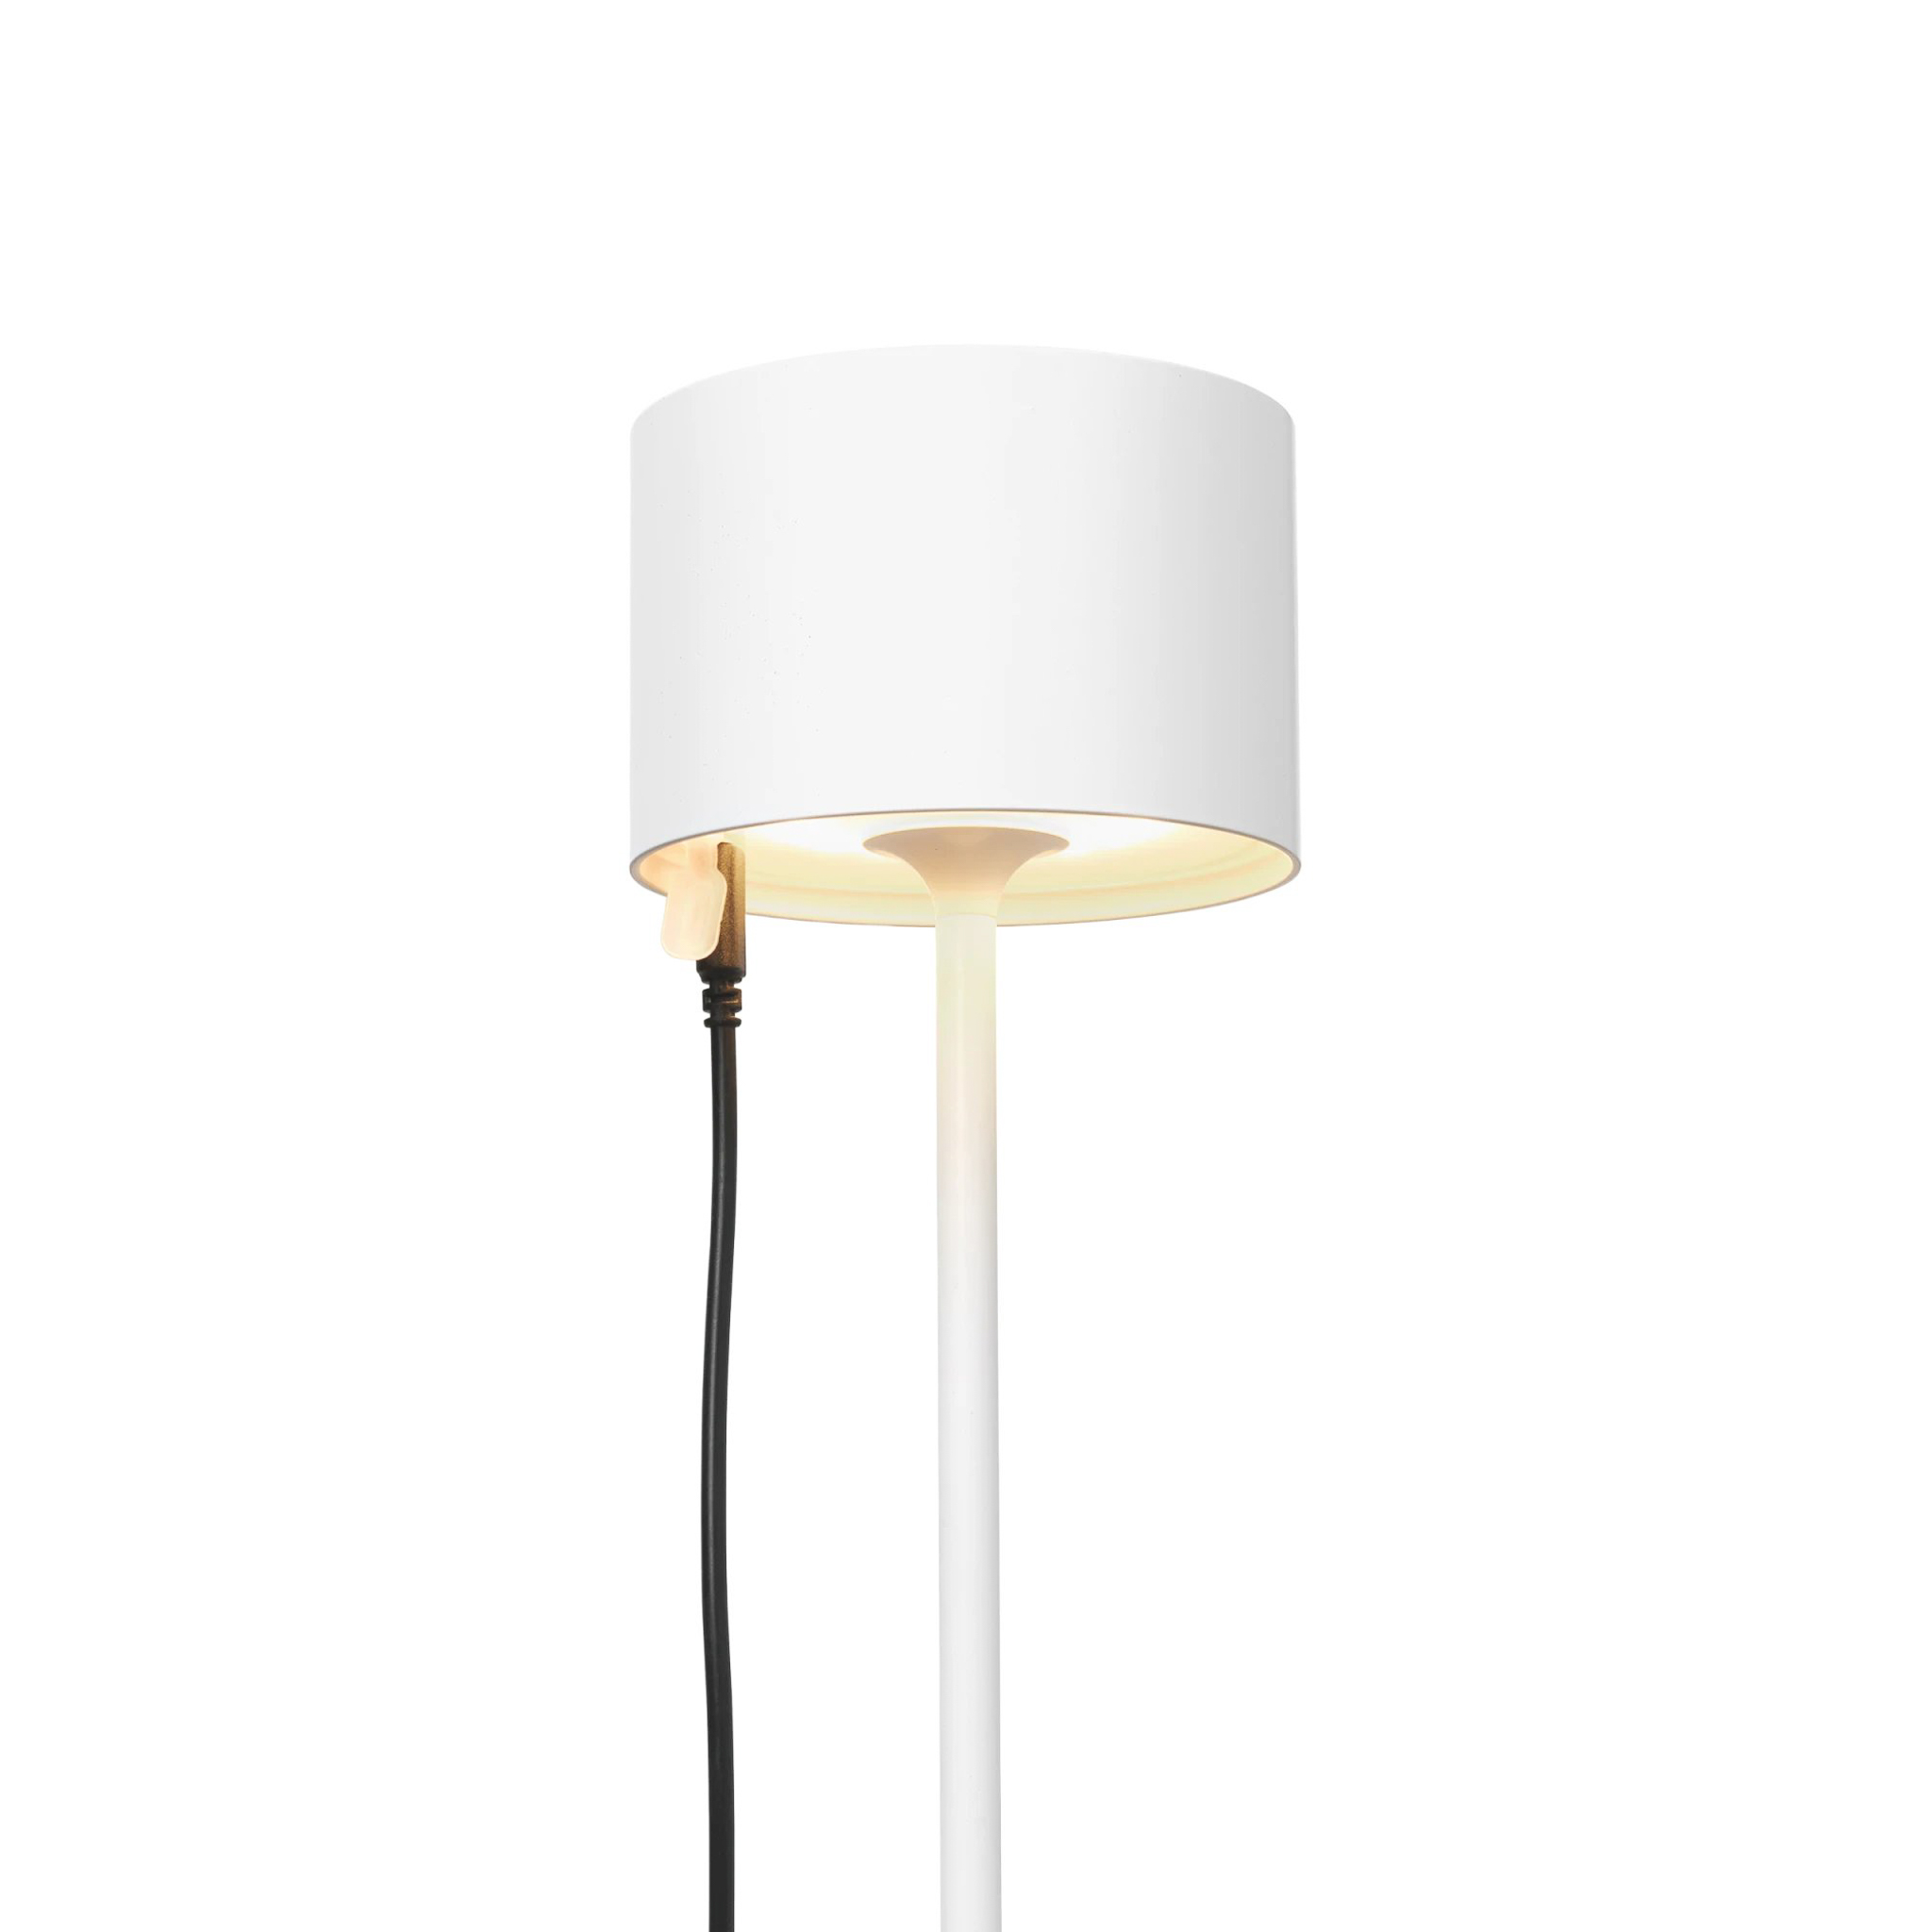 BLOMUS // FAROL - MOBILE LED TABLE LAMP | WHITE